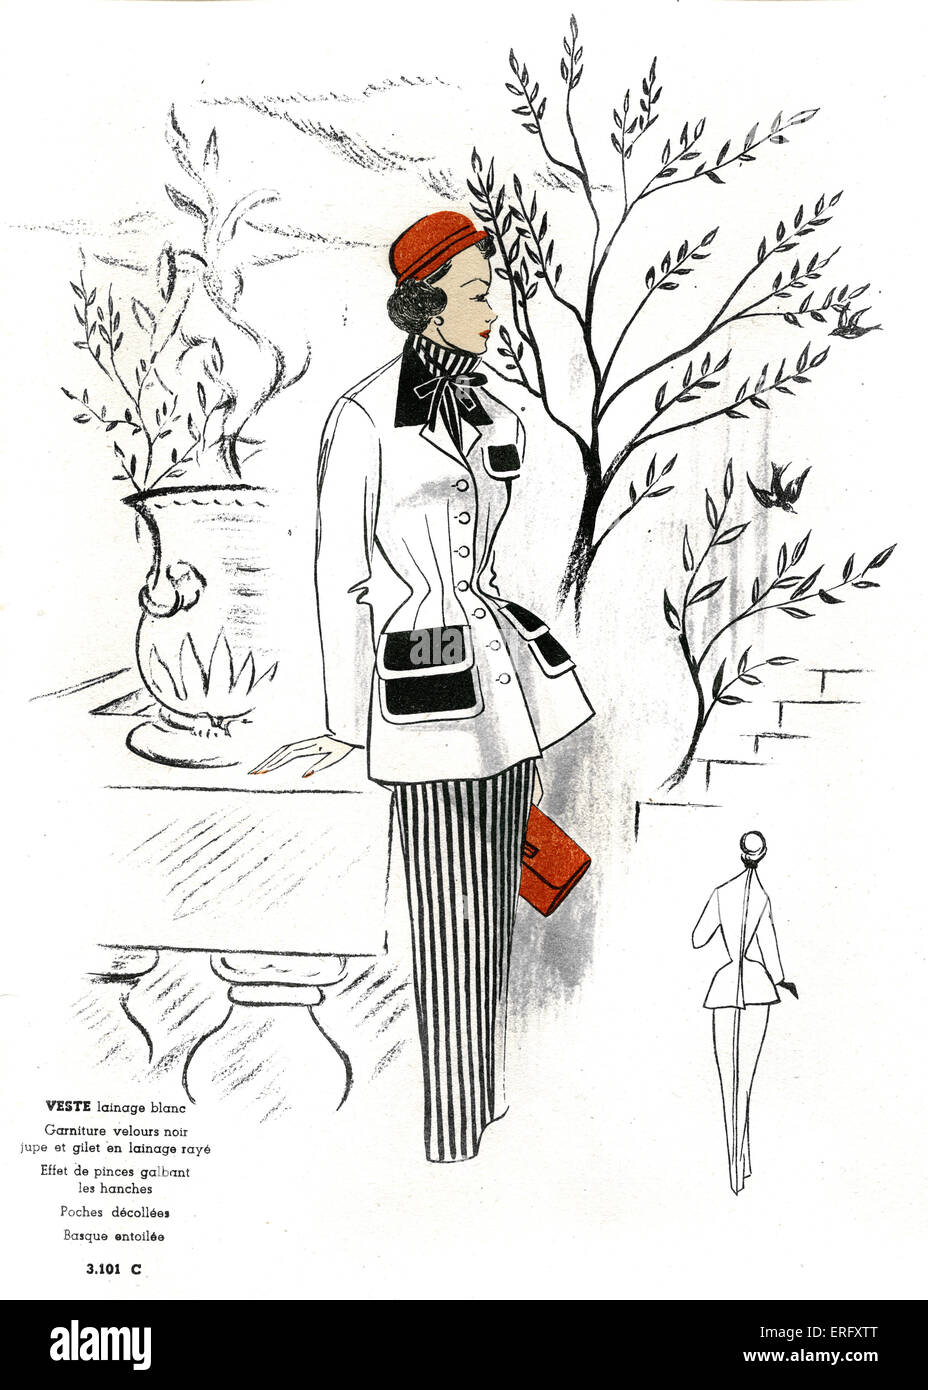 Moda francese, design per un bianco giacca di lana con una lana a righe  gonna e camicetta/ Veste lainage blanc, jupe et gilet en lainage rayé. Per  la fine degli anni quaranta.